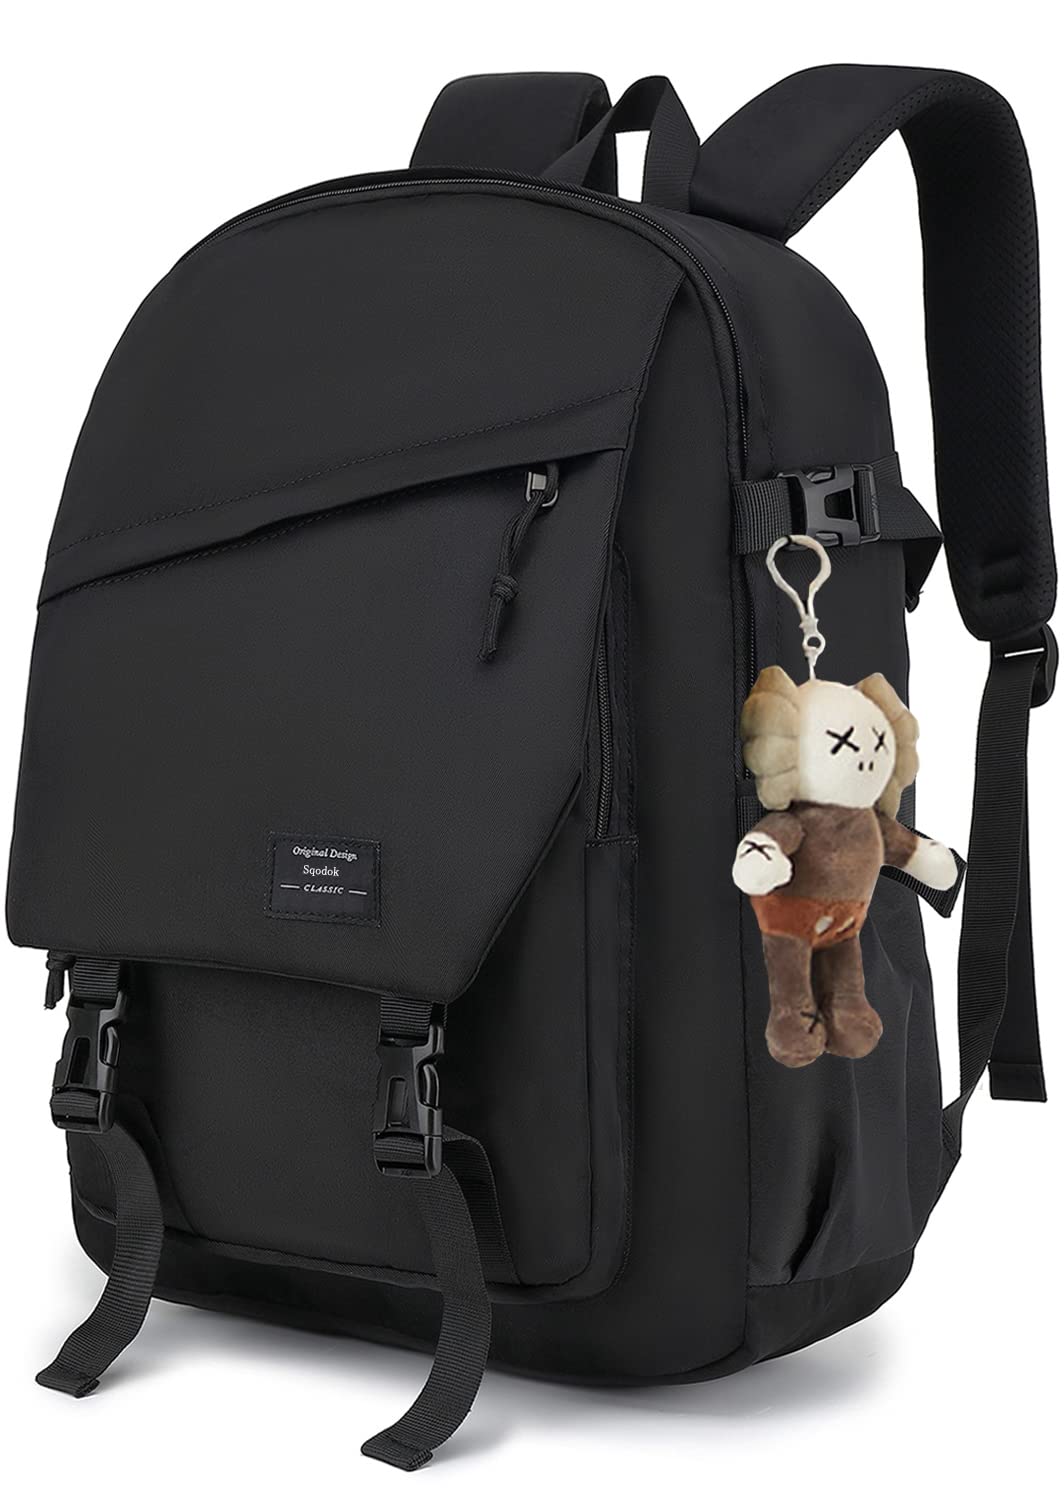 Sqodok Backpack for School Backpacks for Girls Black Bookbag for Women Men Teen College Shool Bag for Middle School High School